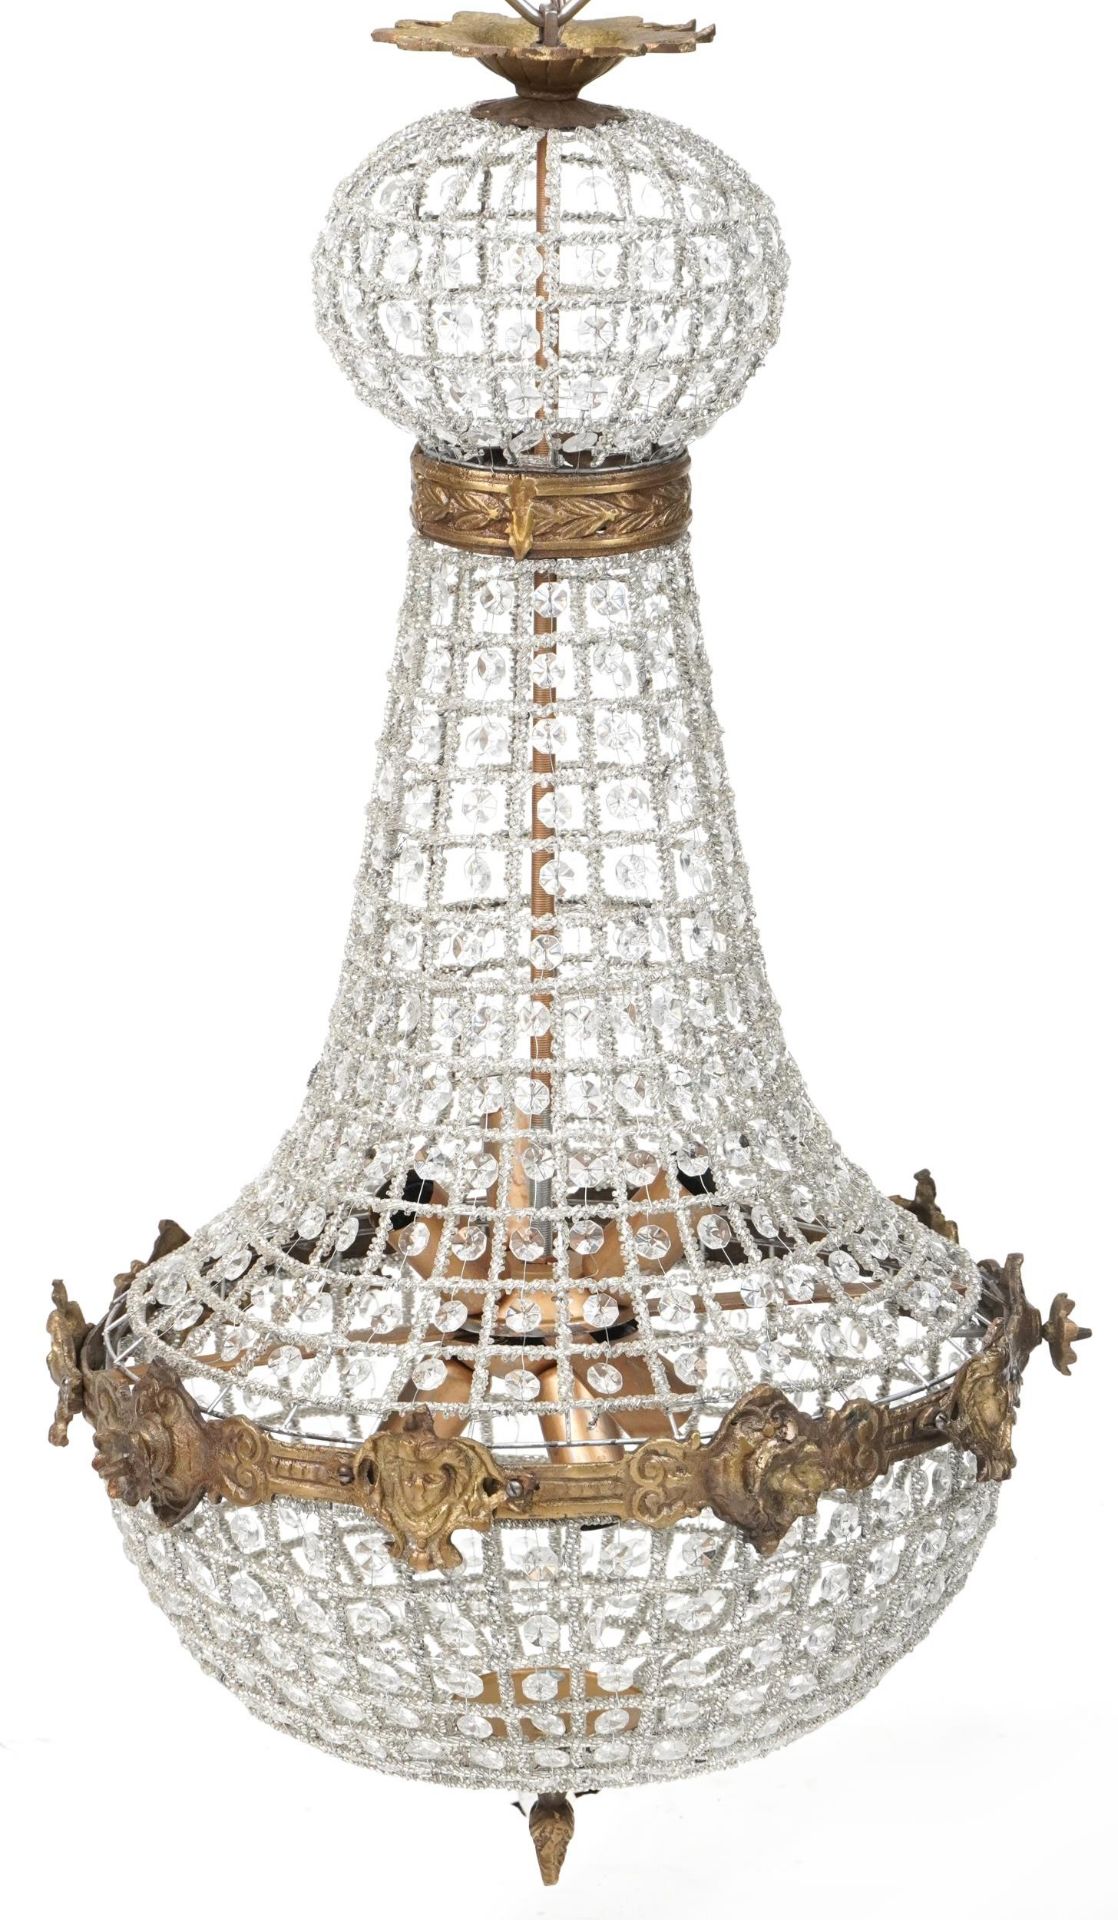 Ornate chandelier with brass mounts, 75cm high - Bild 2 aus 2